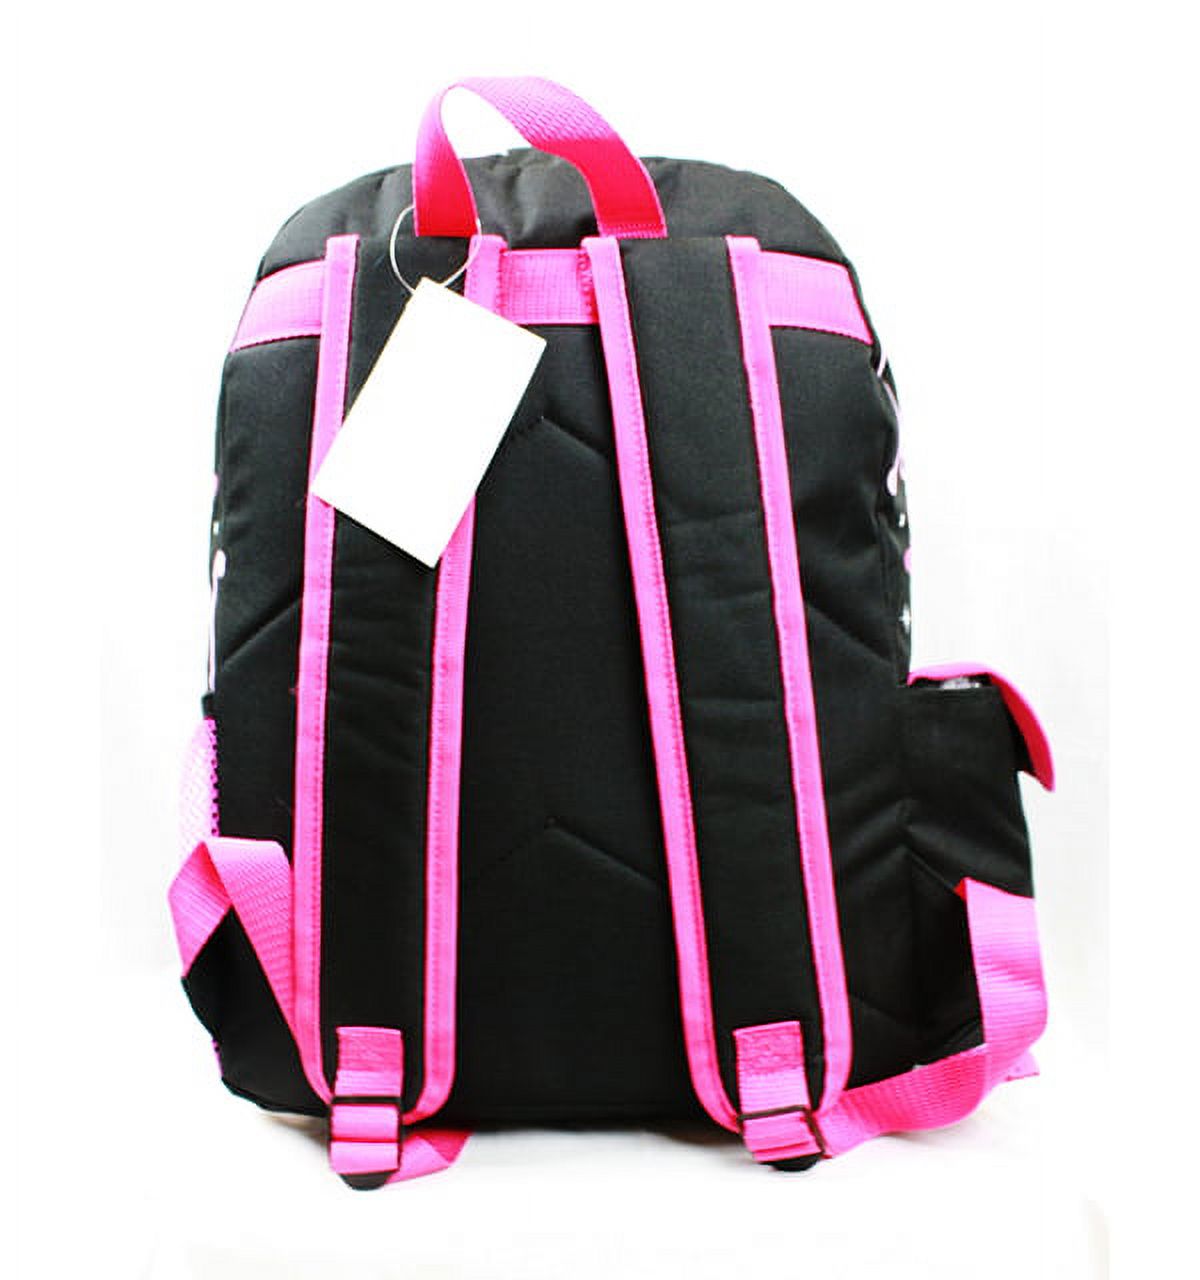 Backpack - - 4 Princess Rose Bag Black School Bag New A05932 - image 3 of 3